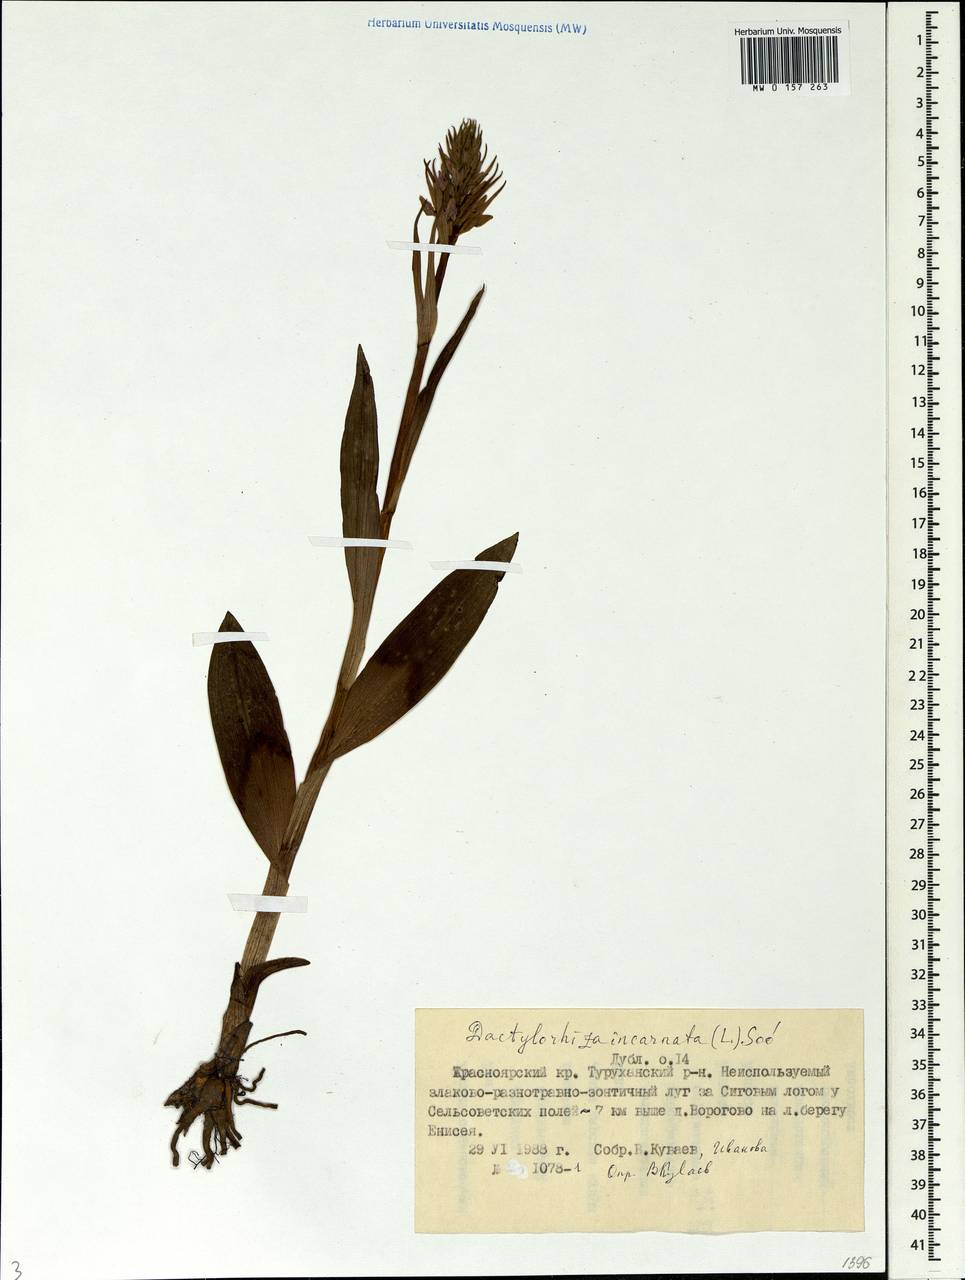 Dactylorhiza incarnata (L.) Soó, Siberia, Central Siberia (S3) (Russia)